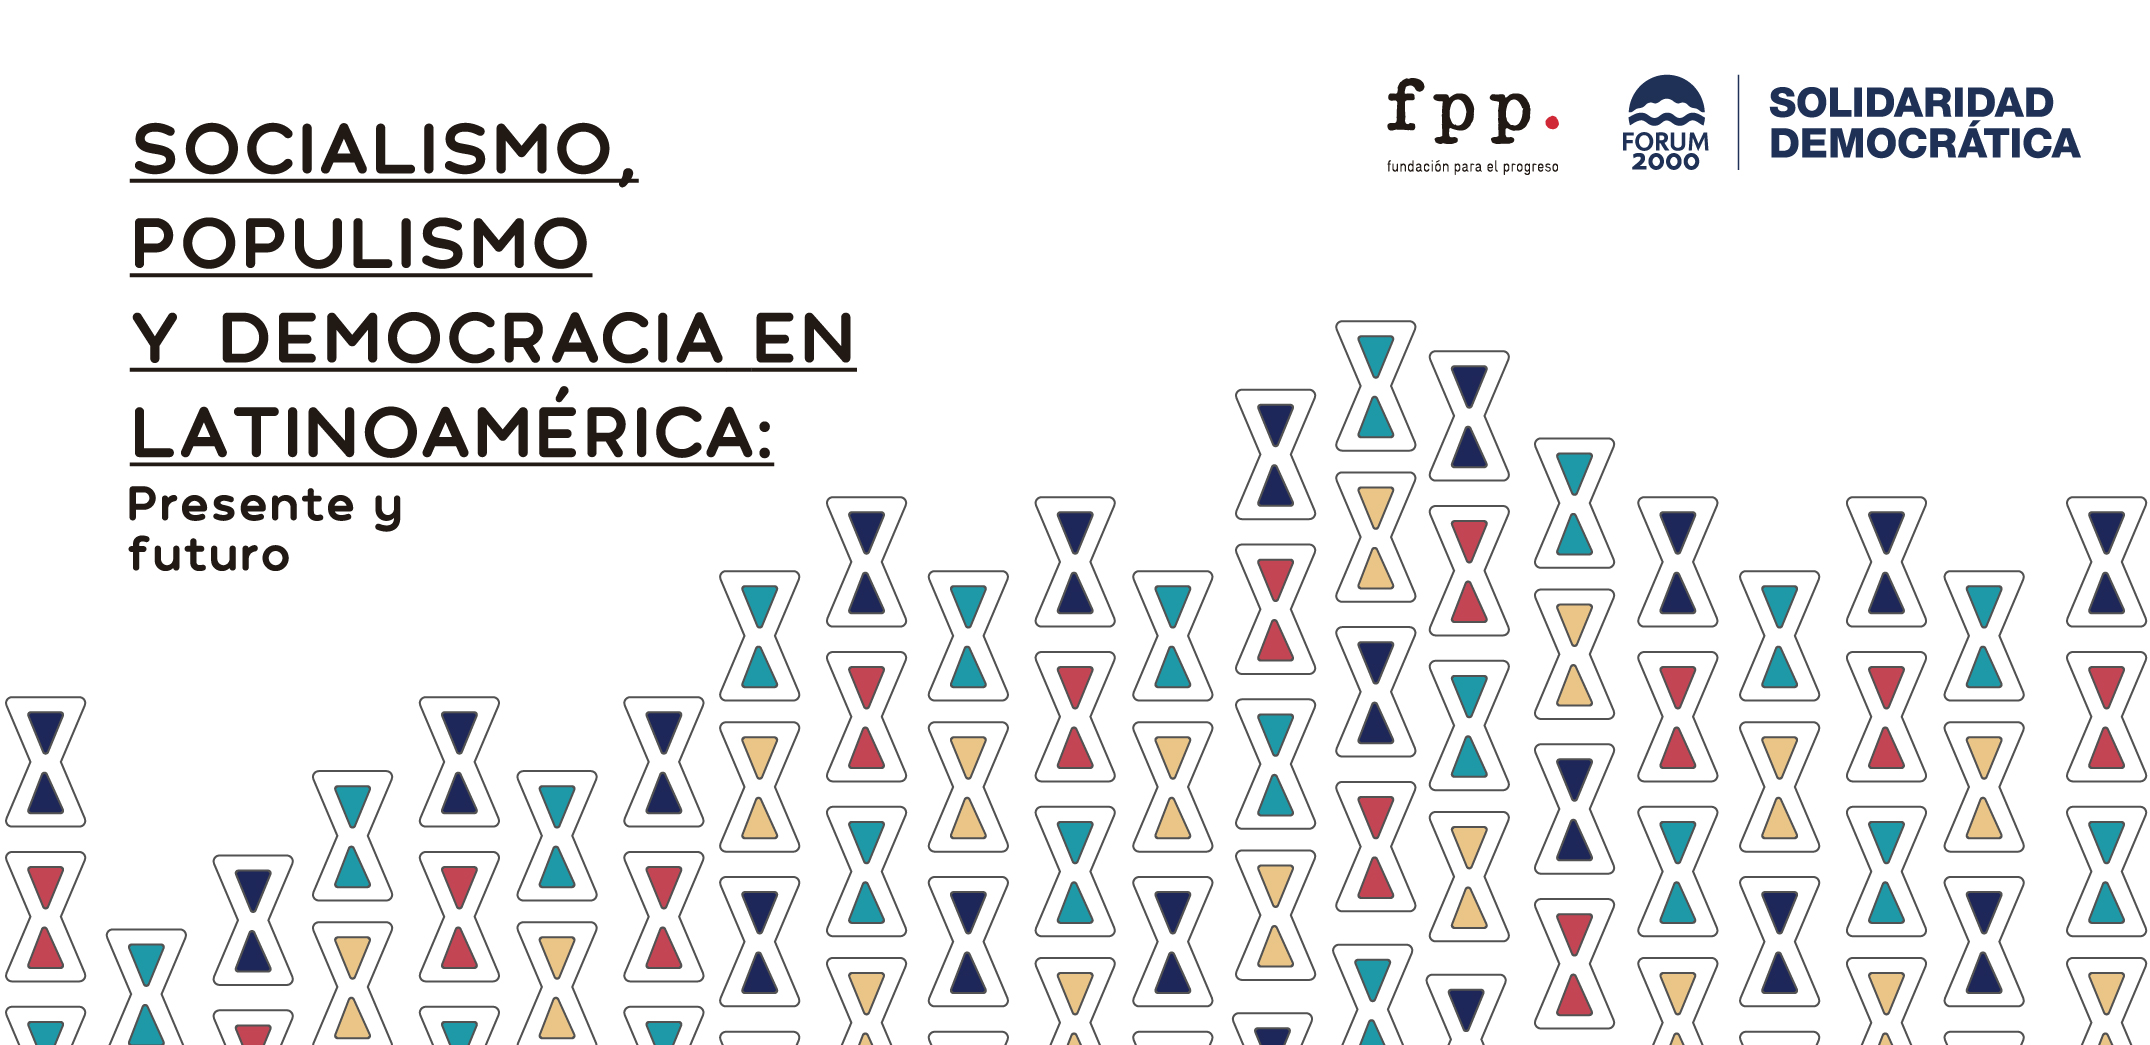 “Solidaridad Democrática en América Latina ” por Forum 2000 y FPP